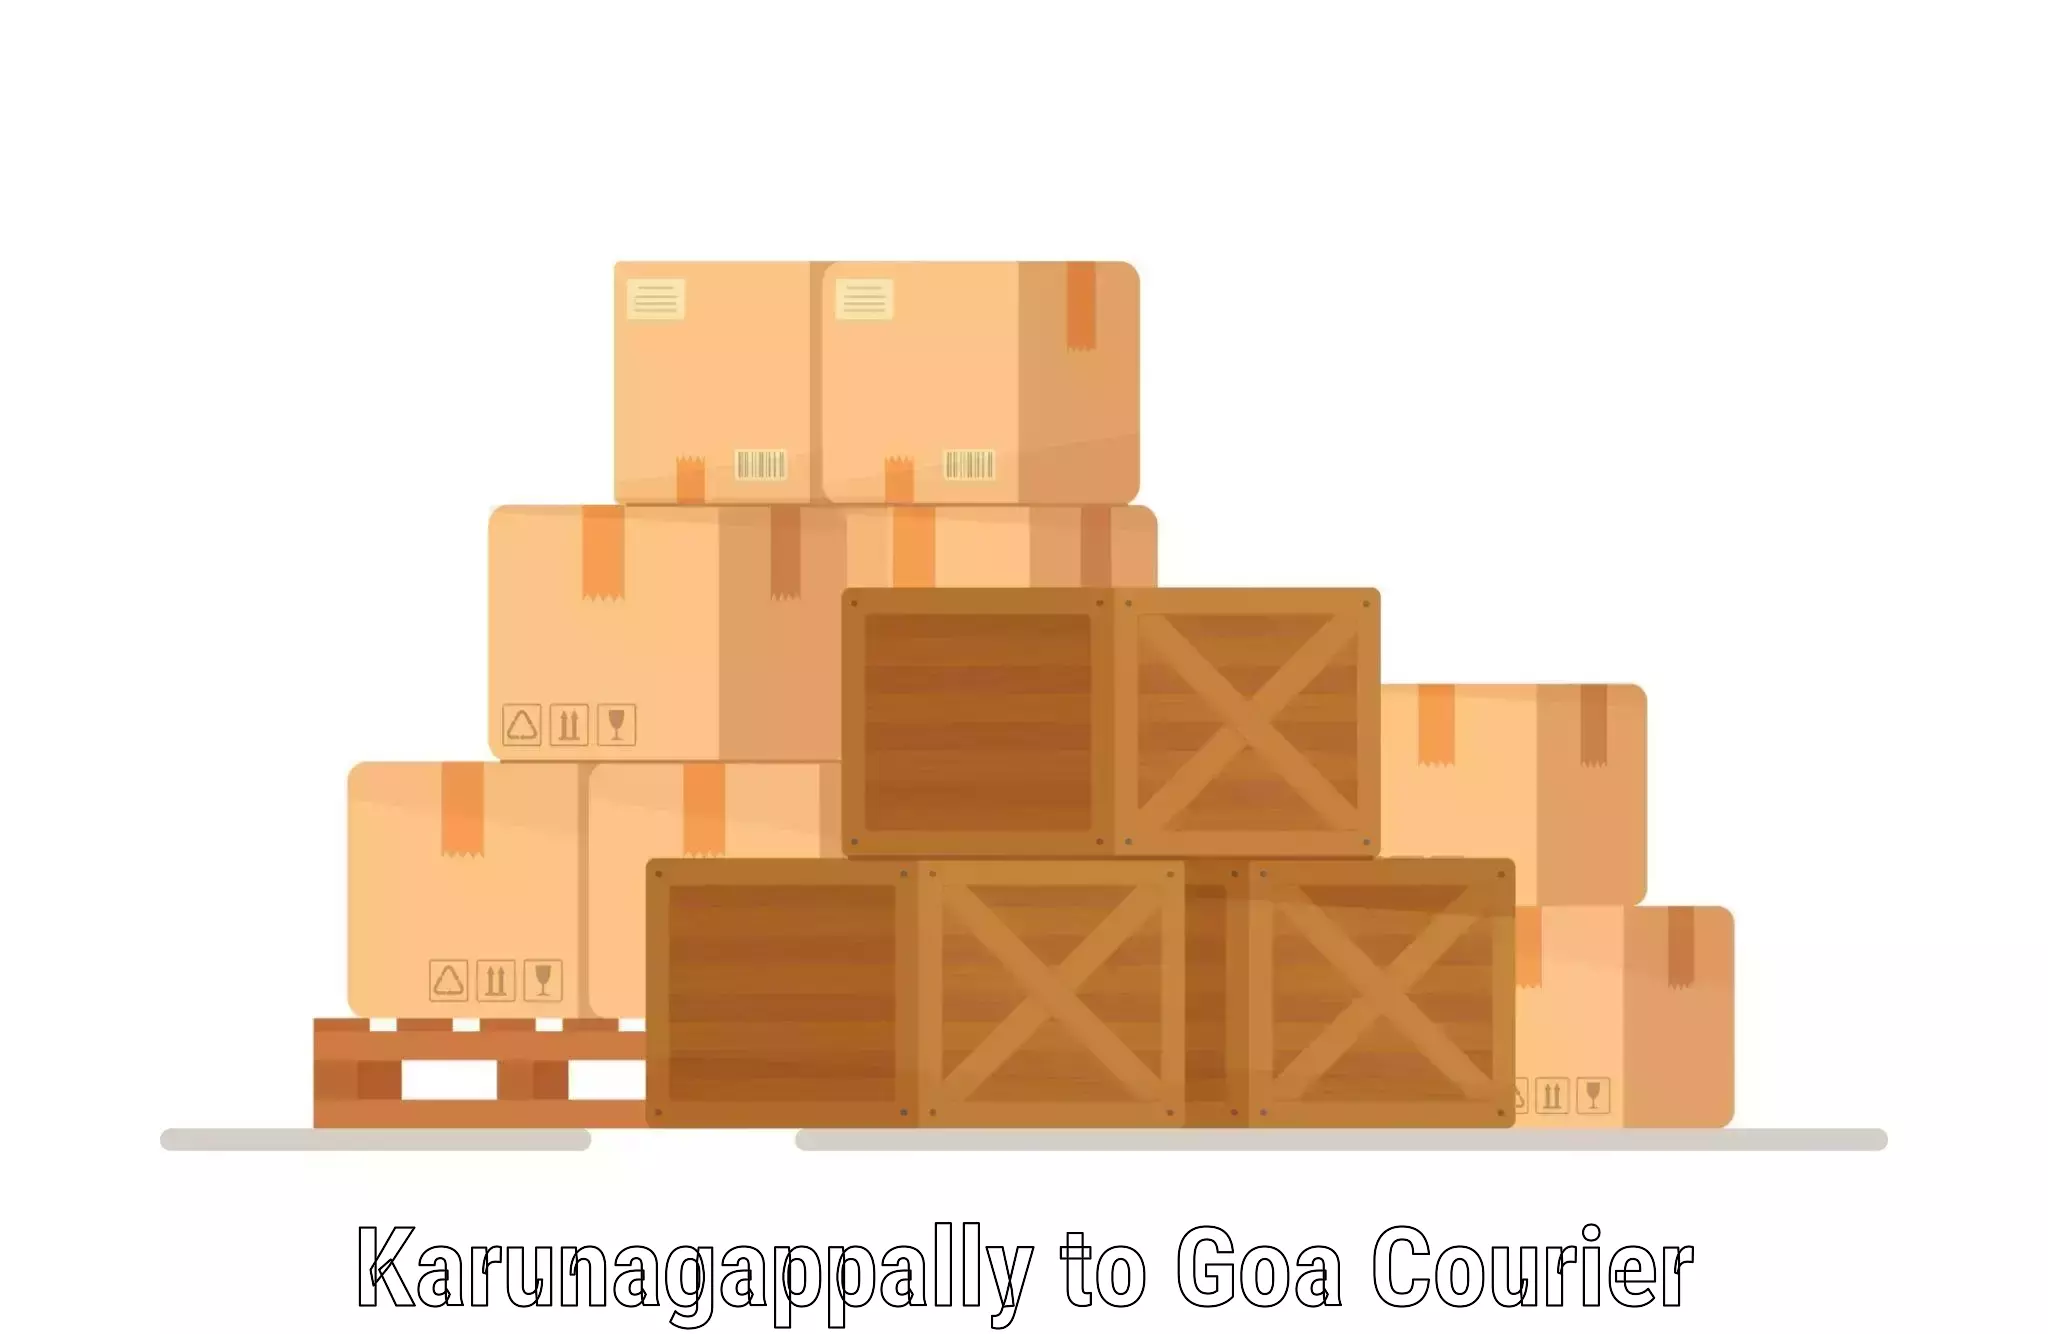 Customer-centric shipping Karunagappally to Vasco da Gama